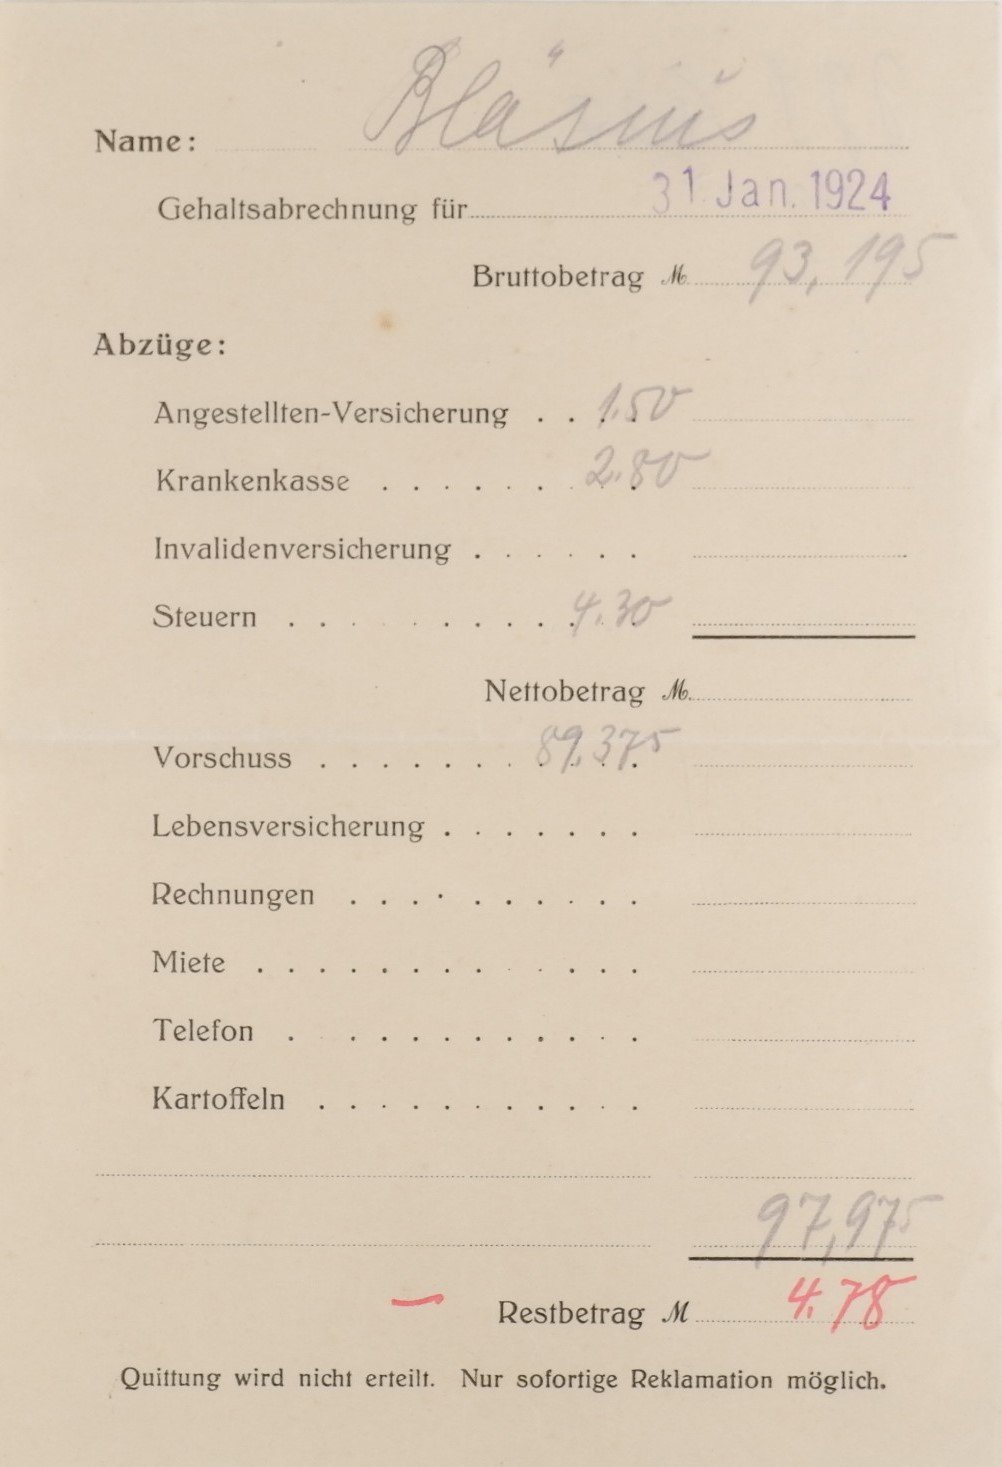 Gehaltsabrechnung vom 31. Januar 1924 (Bläsius) (Volkskunde- und Freilichtmuseum Roscheider Hof CC0)